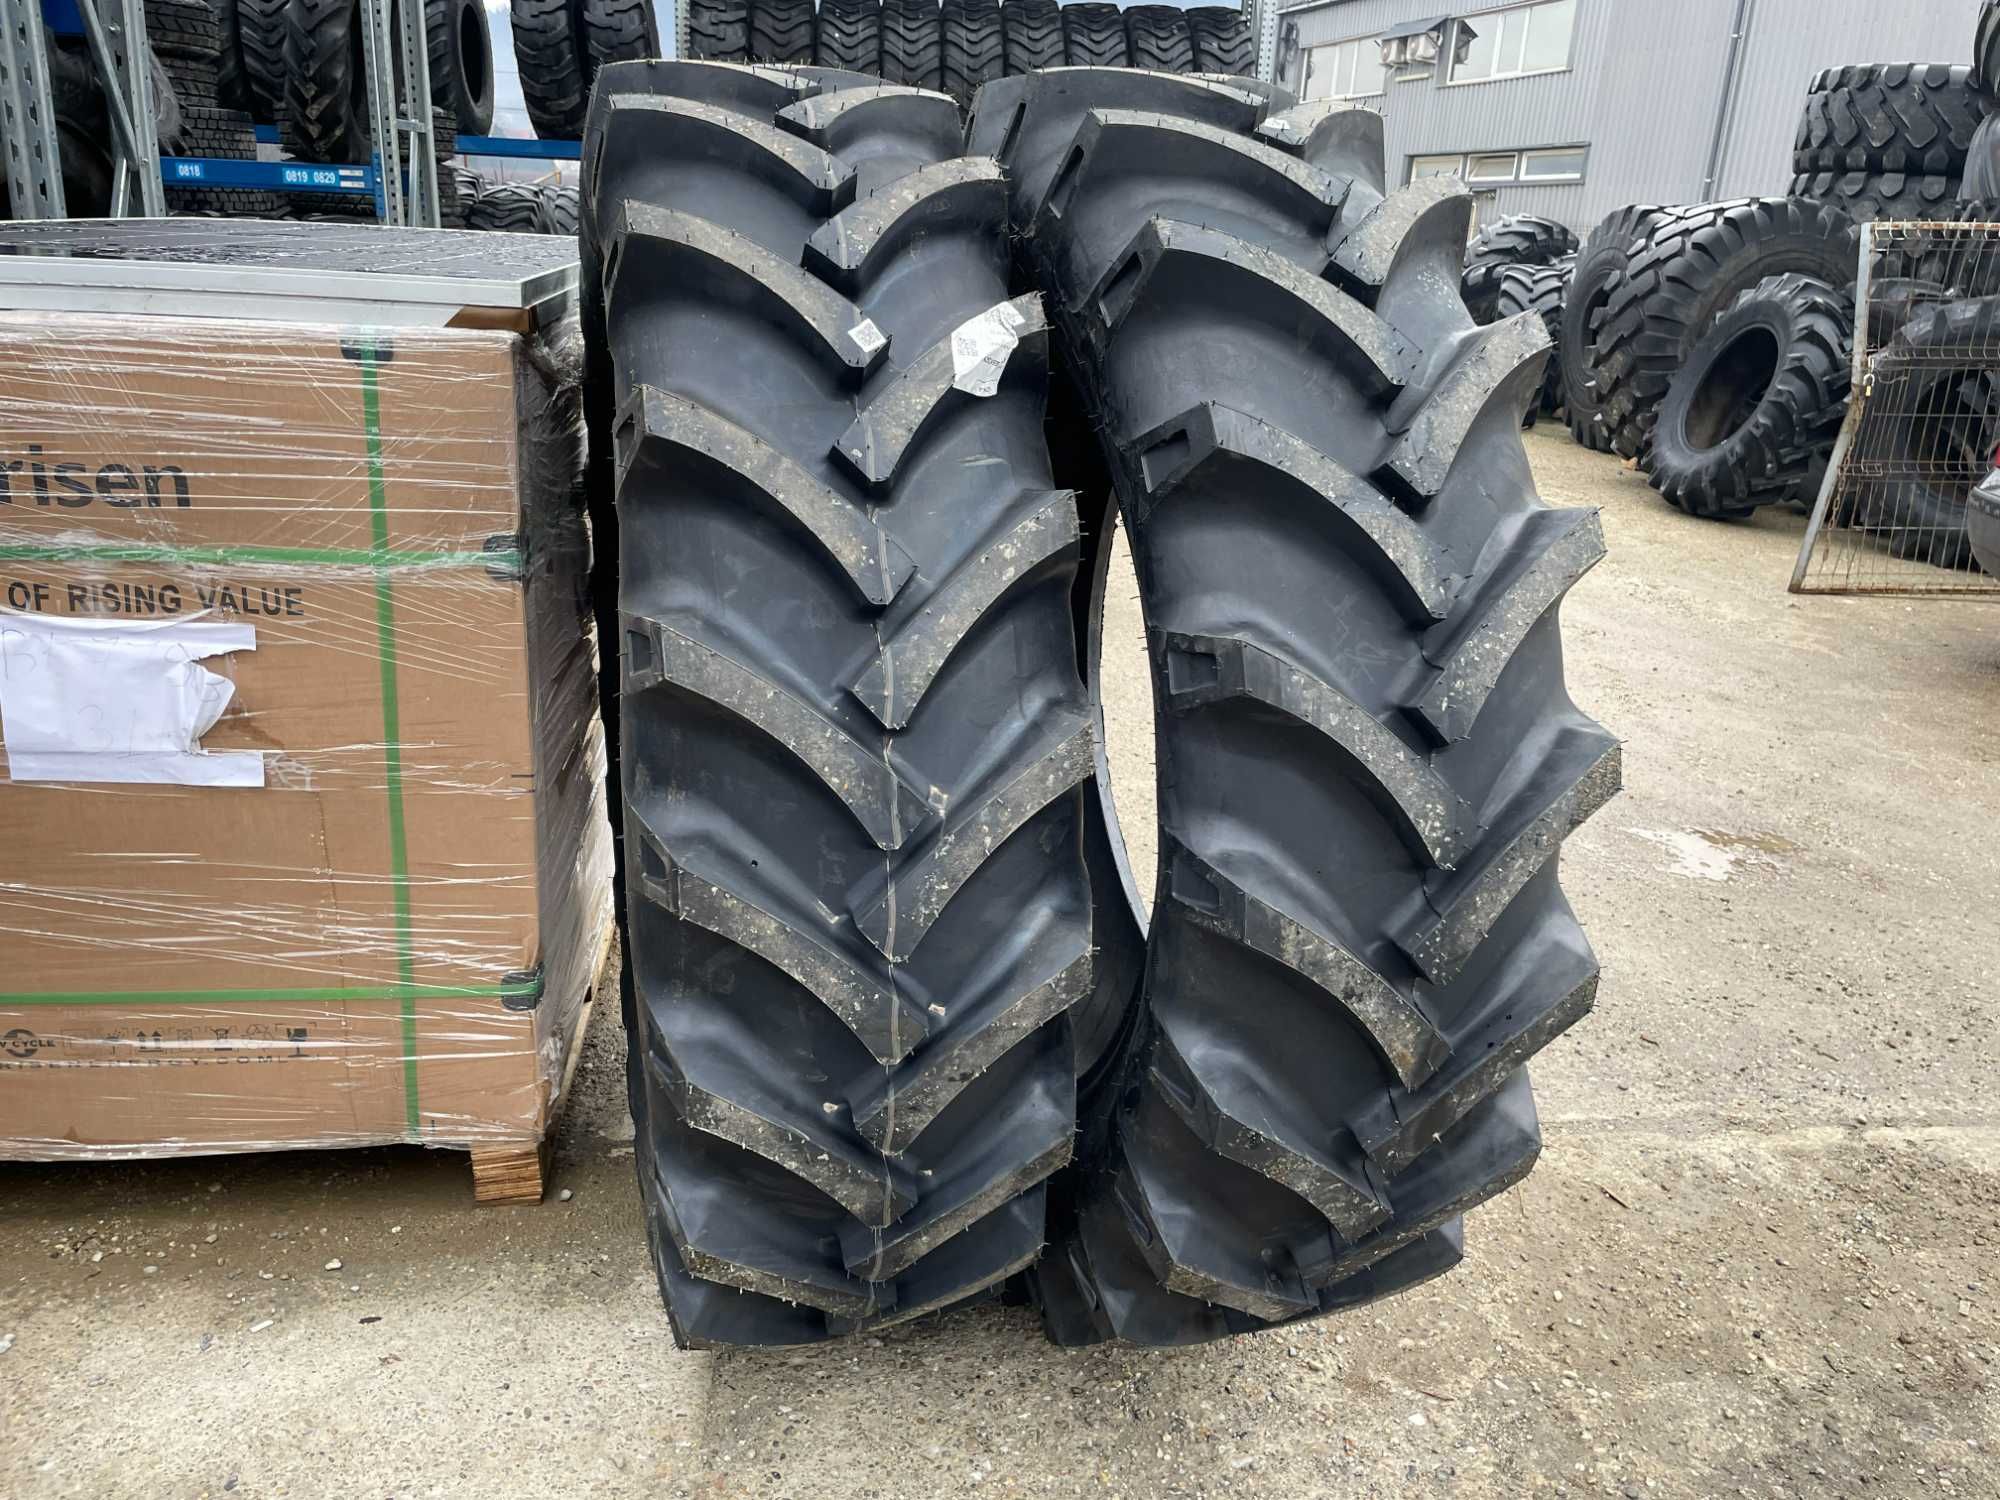 OZKA Anvelope noi agricole de tractor 16.9-38 cu 14pr livrare